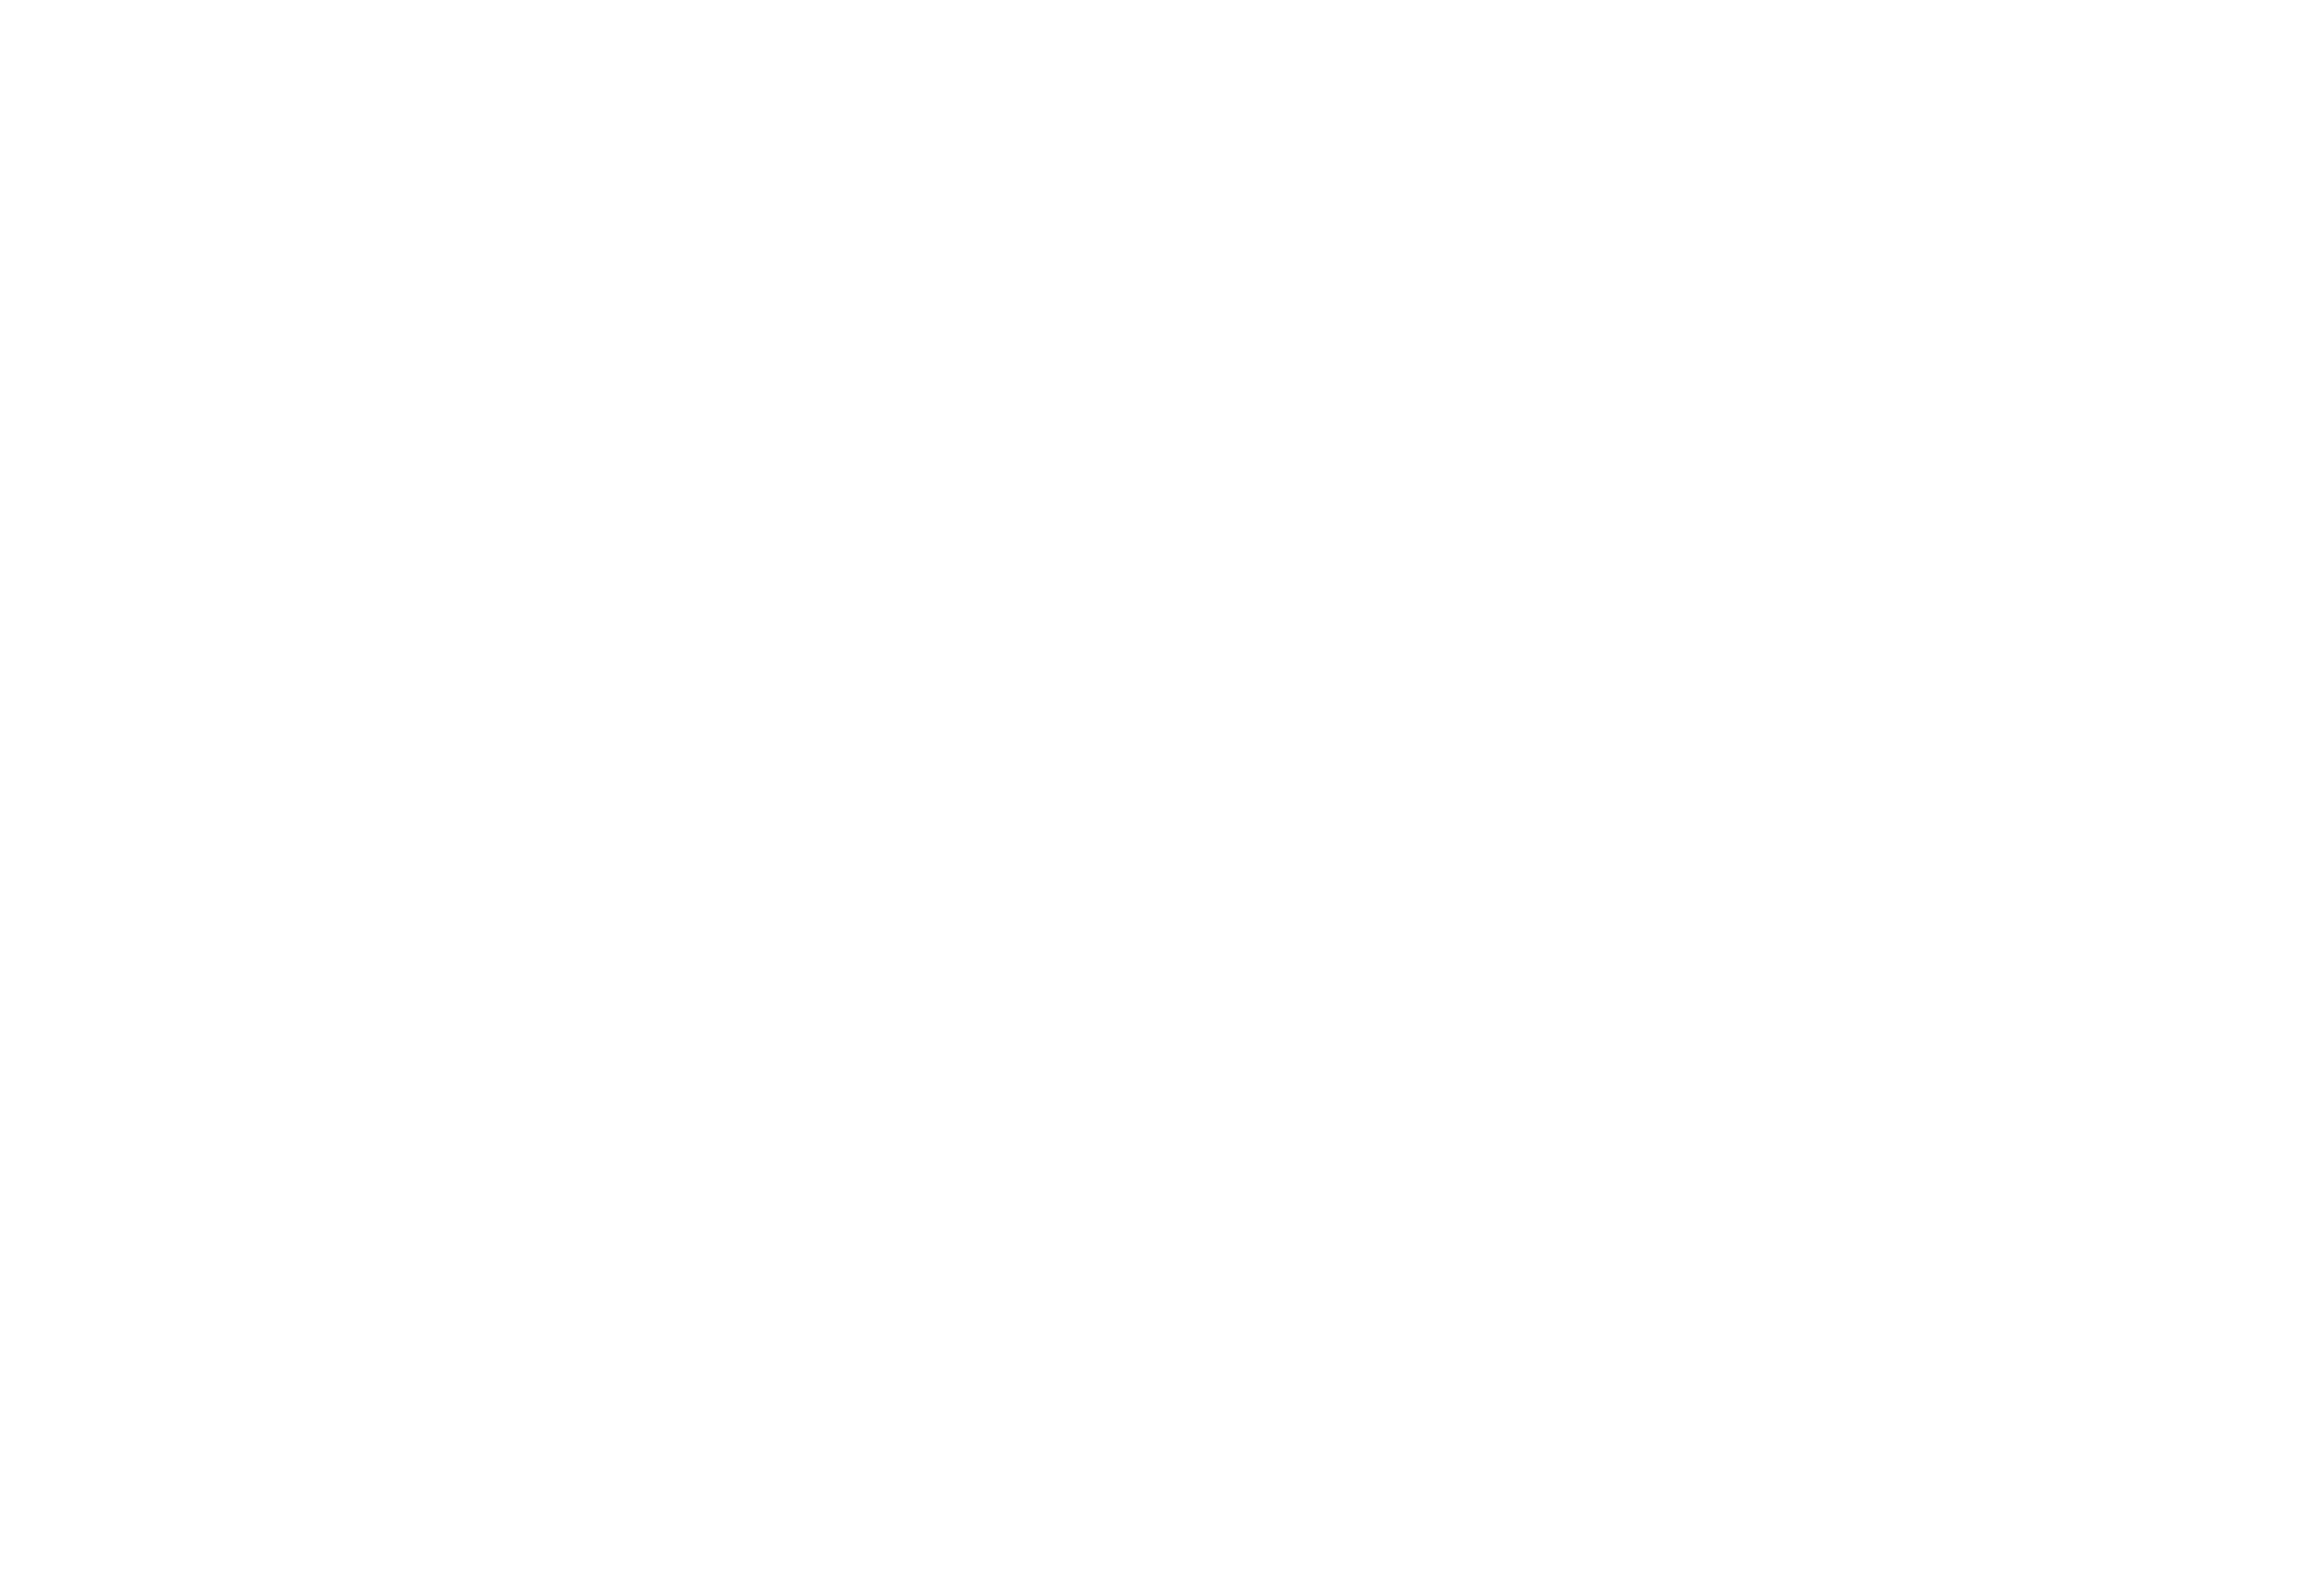 AerSale